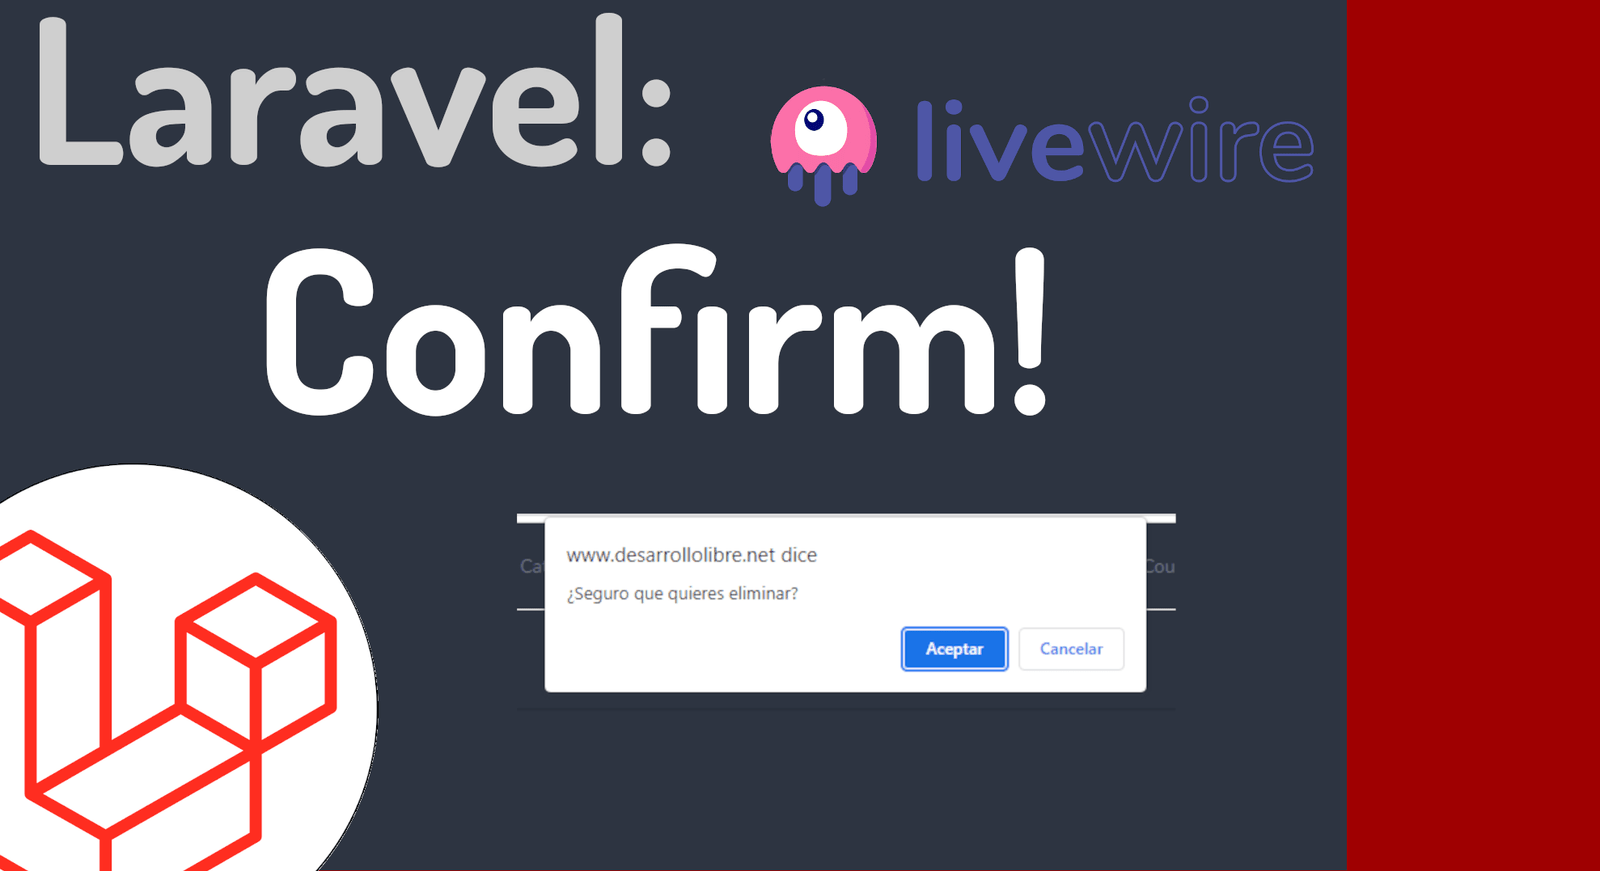 Cómo hacer alerts o dialogos de confirmación en Laravel Livewire